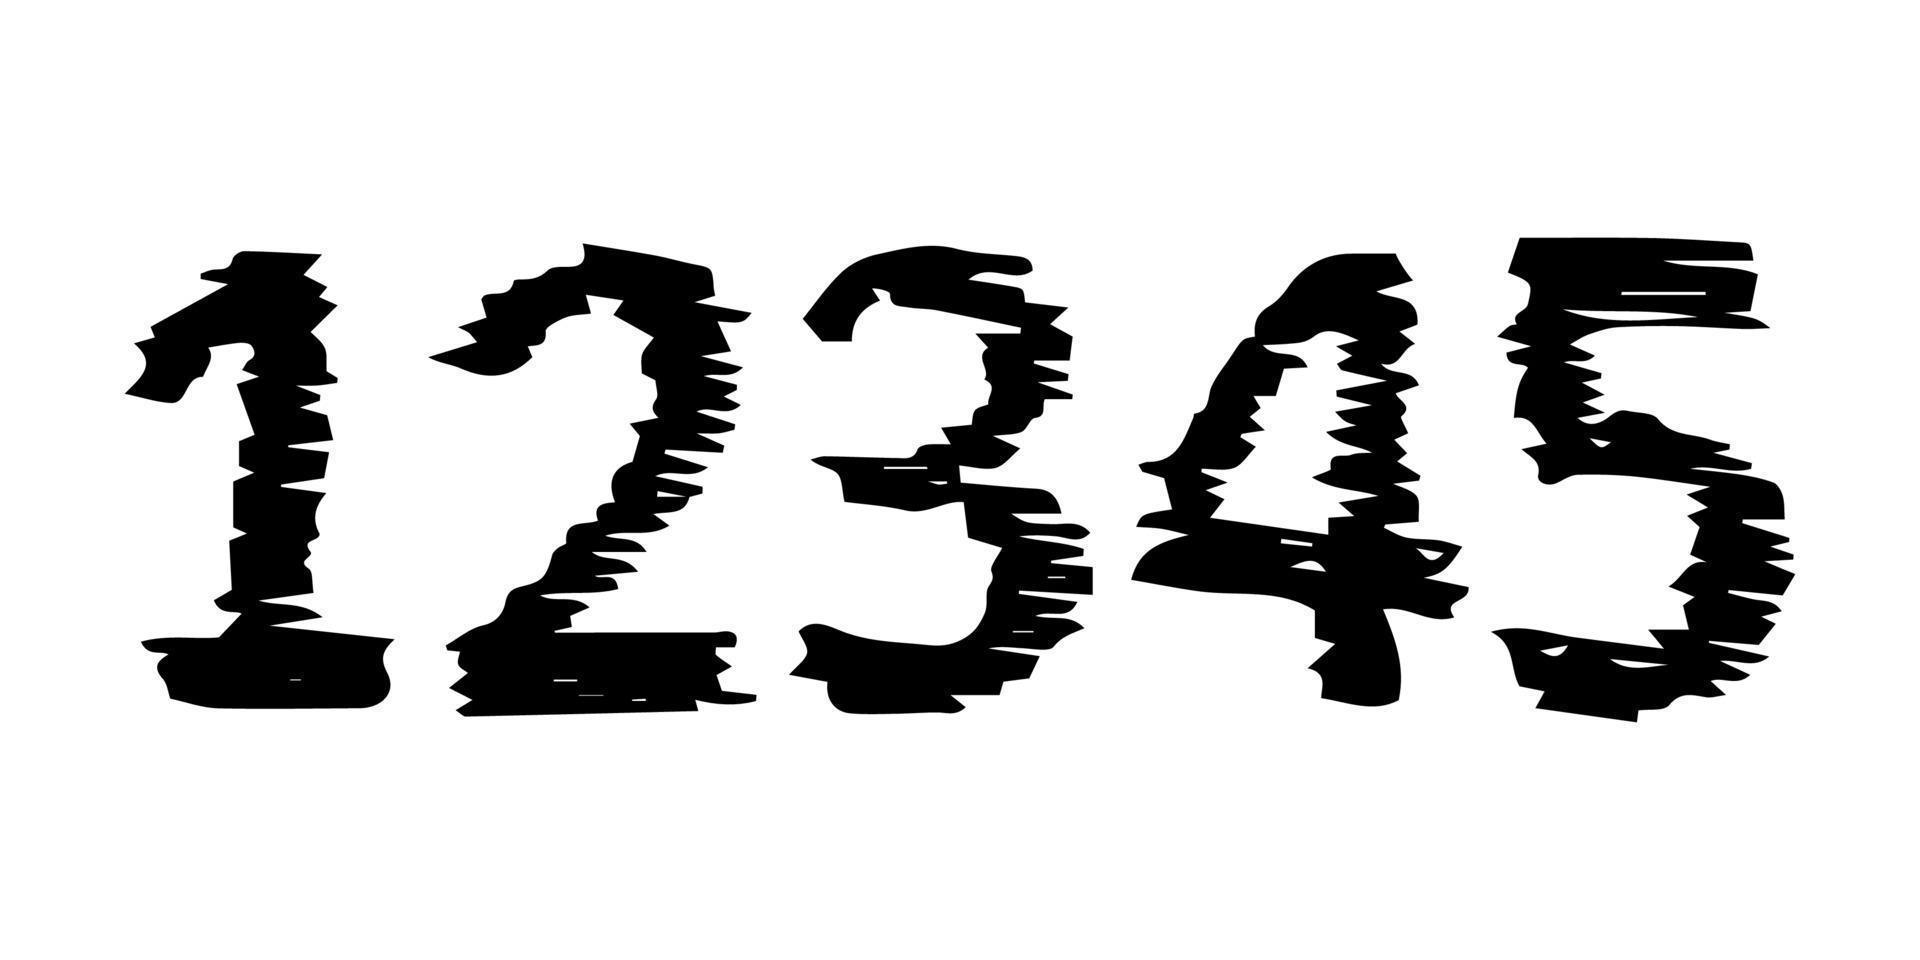 números dibujados a mano 12345. fuente moderna en mayúsculas y tipo de letra. símbolos negros sobre fondo blanco. ilustración vectorial vector